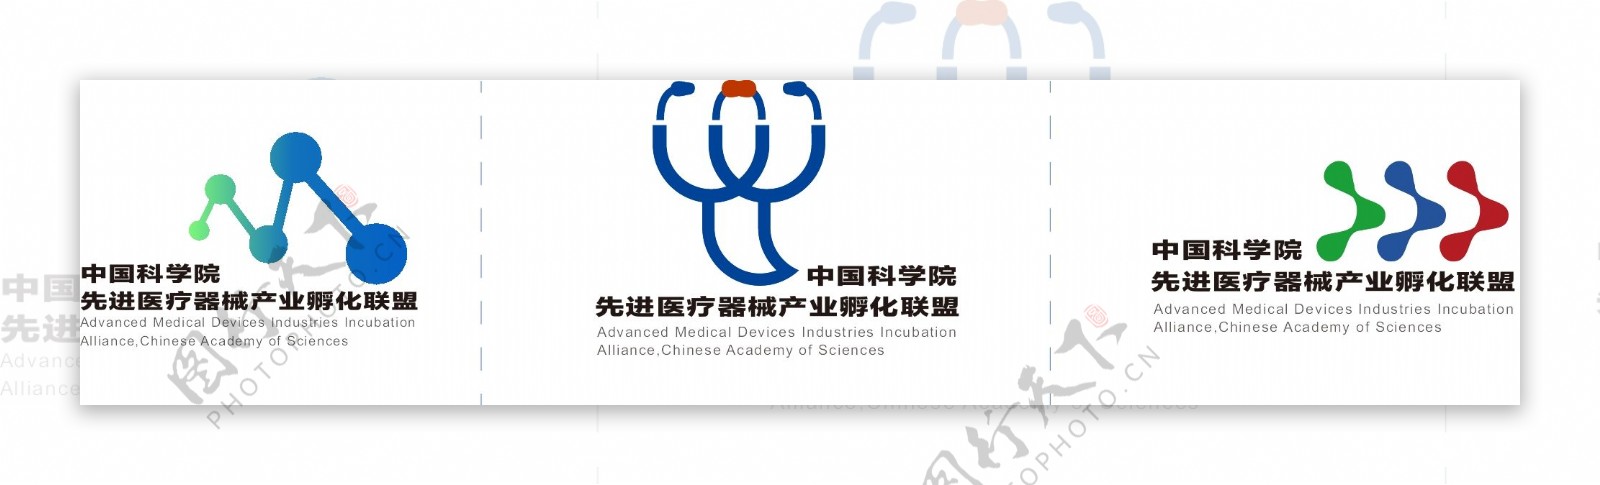 医疗器械logo